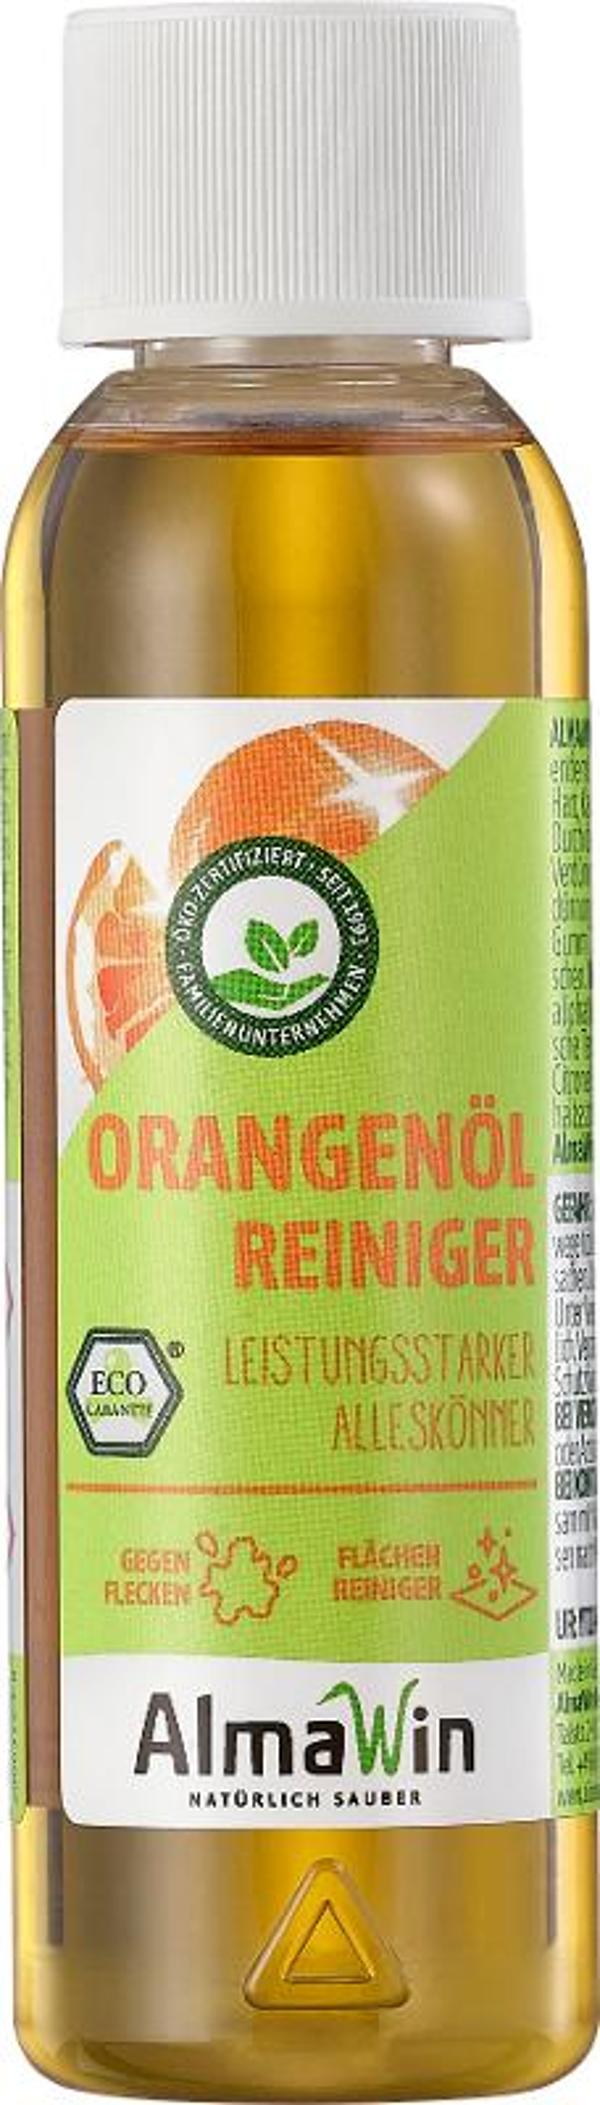 Produktfoto zu Orangenöl-Reiniger 125ml